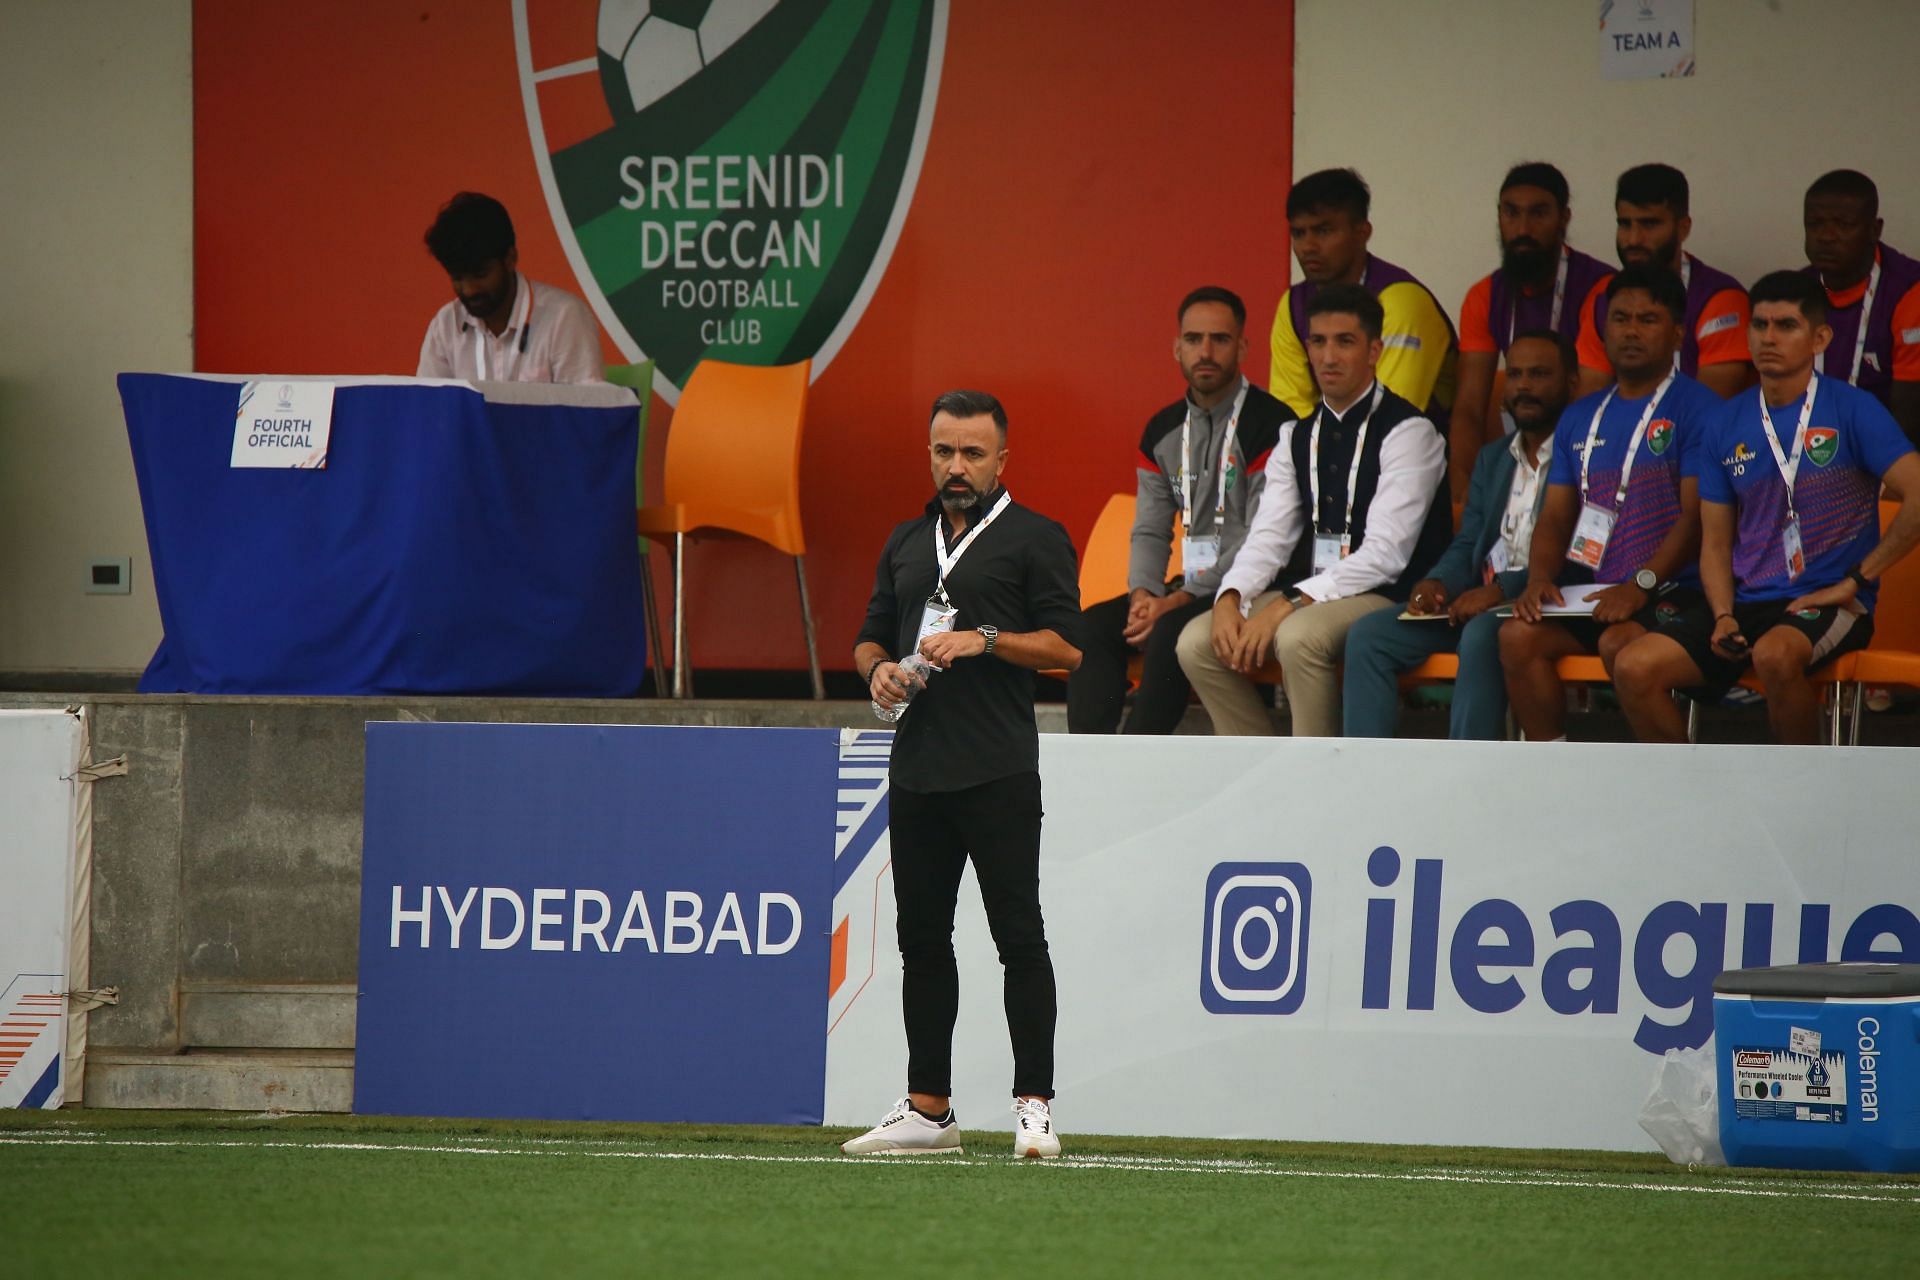 Head coach Carlos Vaz Pinto during Sreenidi Deccan